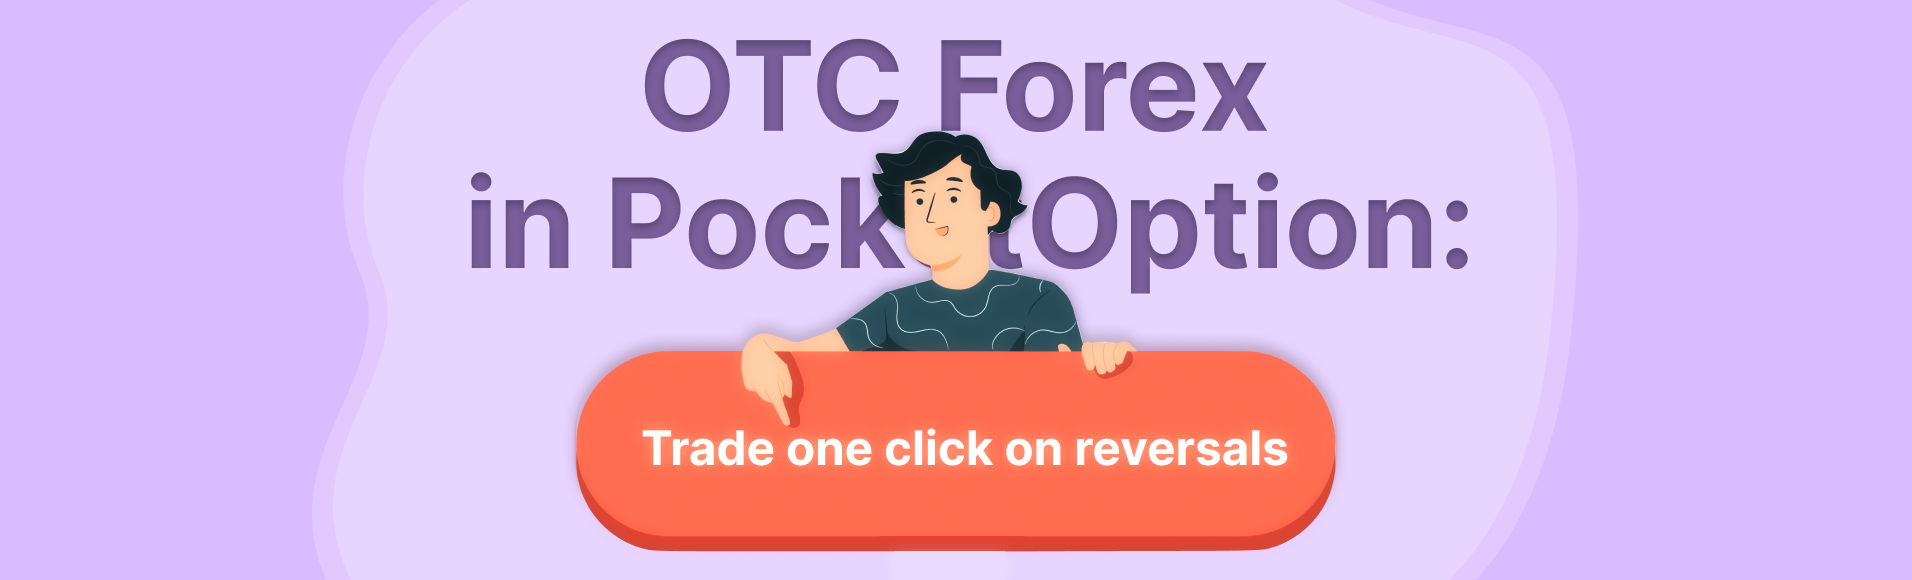 OTC Forex trong PocketOption: giao dịch bằng một cú nhấp chuột khi đảo ngược